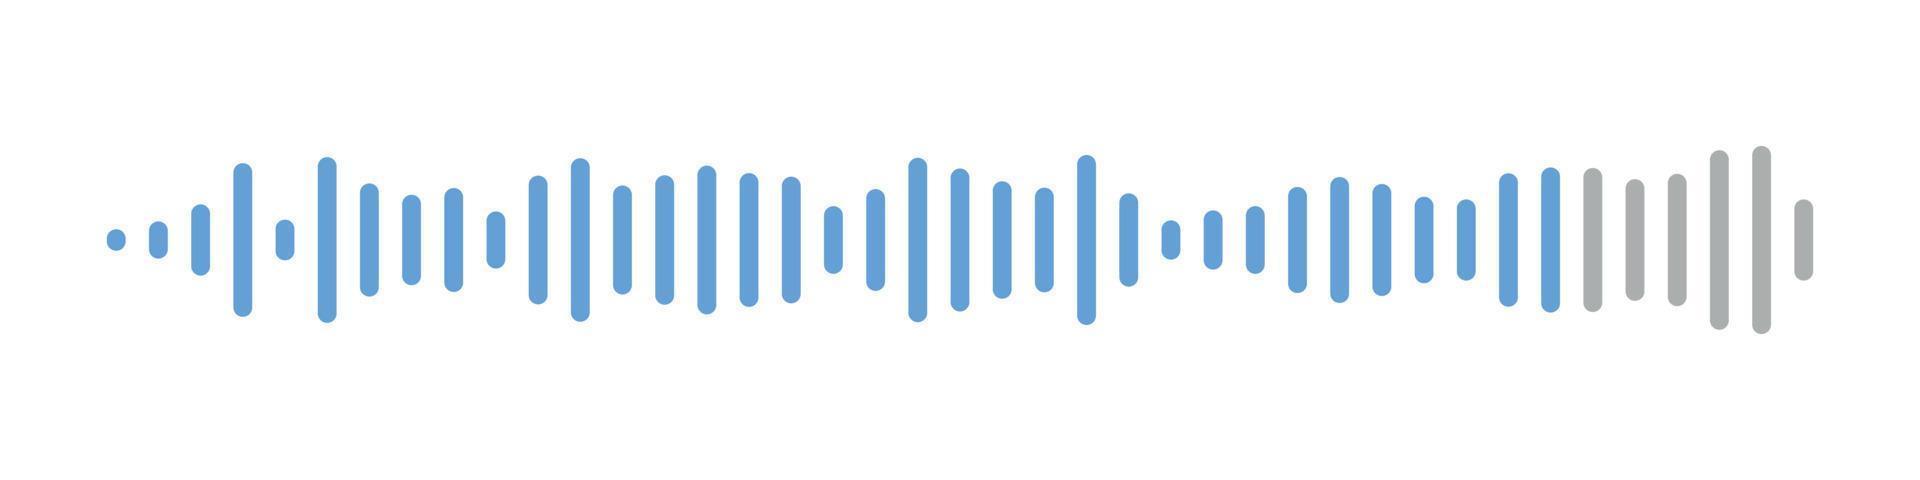 sonido olas mensaje colocar. voz audio mensajes recopilación. espectro ruido gráfico. vector aislado ilustración